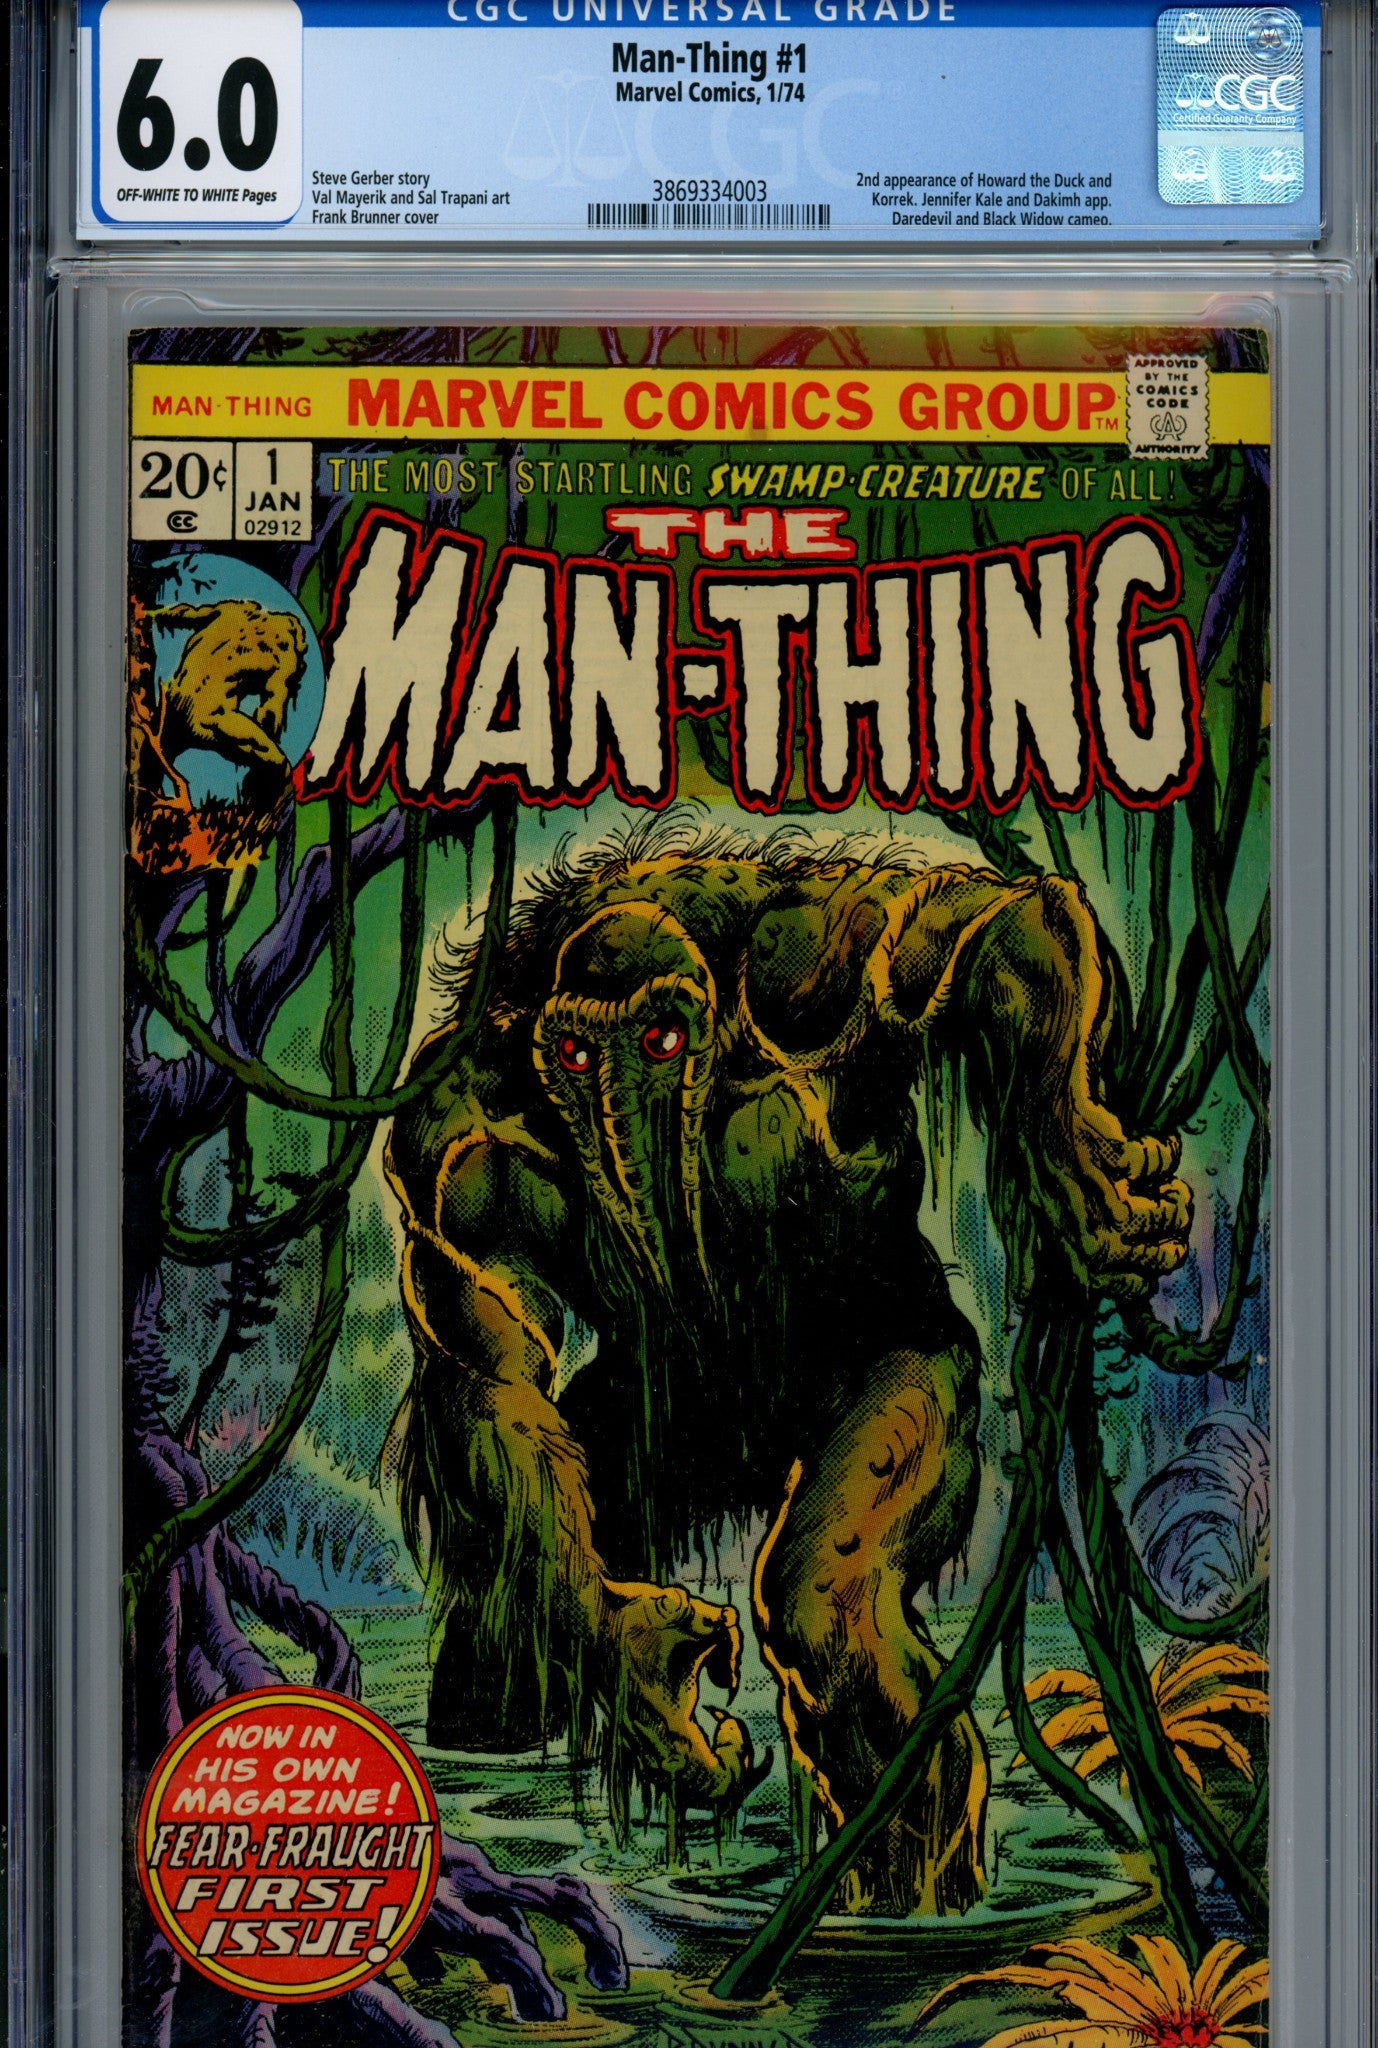 Man-Thing Vol 1 1 CGC 6.0 (FN) (1974) 